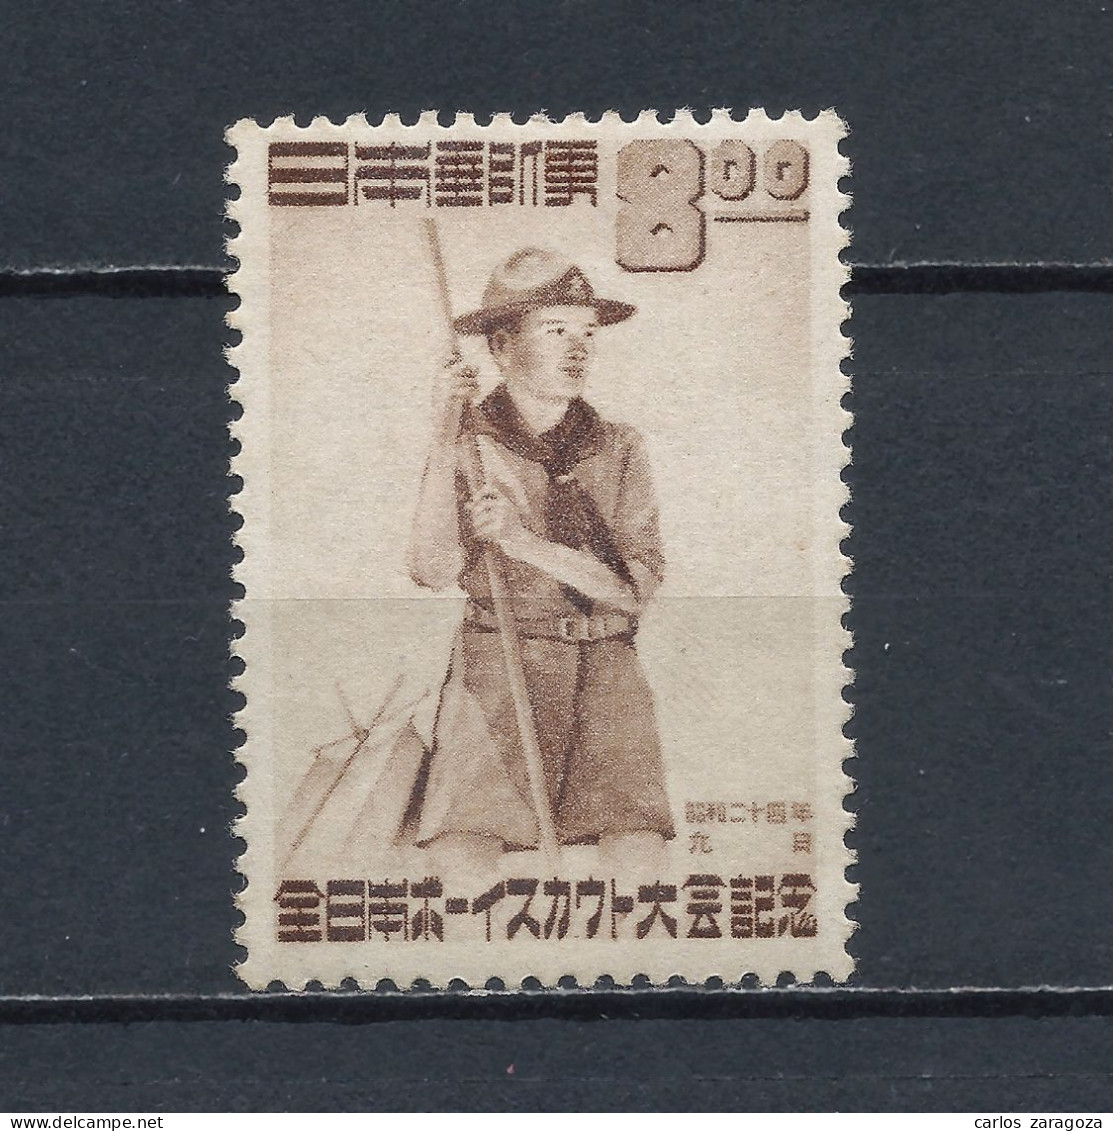 JAPON 1949—SCOUT, JAMBOREE EN TOKIO. 434—SELLO NUEVO (*) MH STAMP 467, TIMBRE NEUF - Ungebraucht